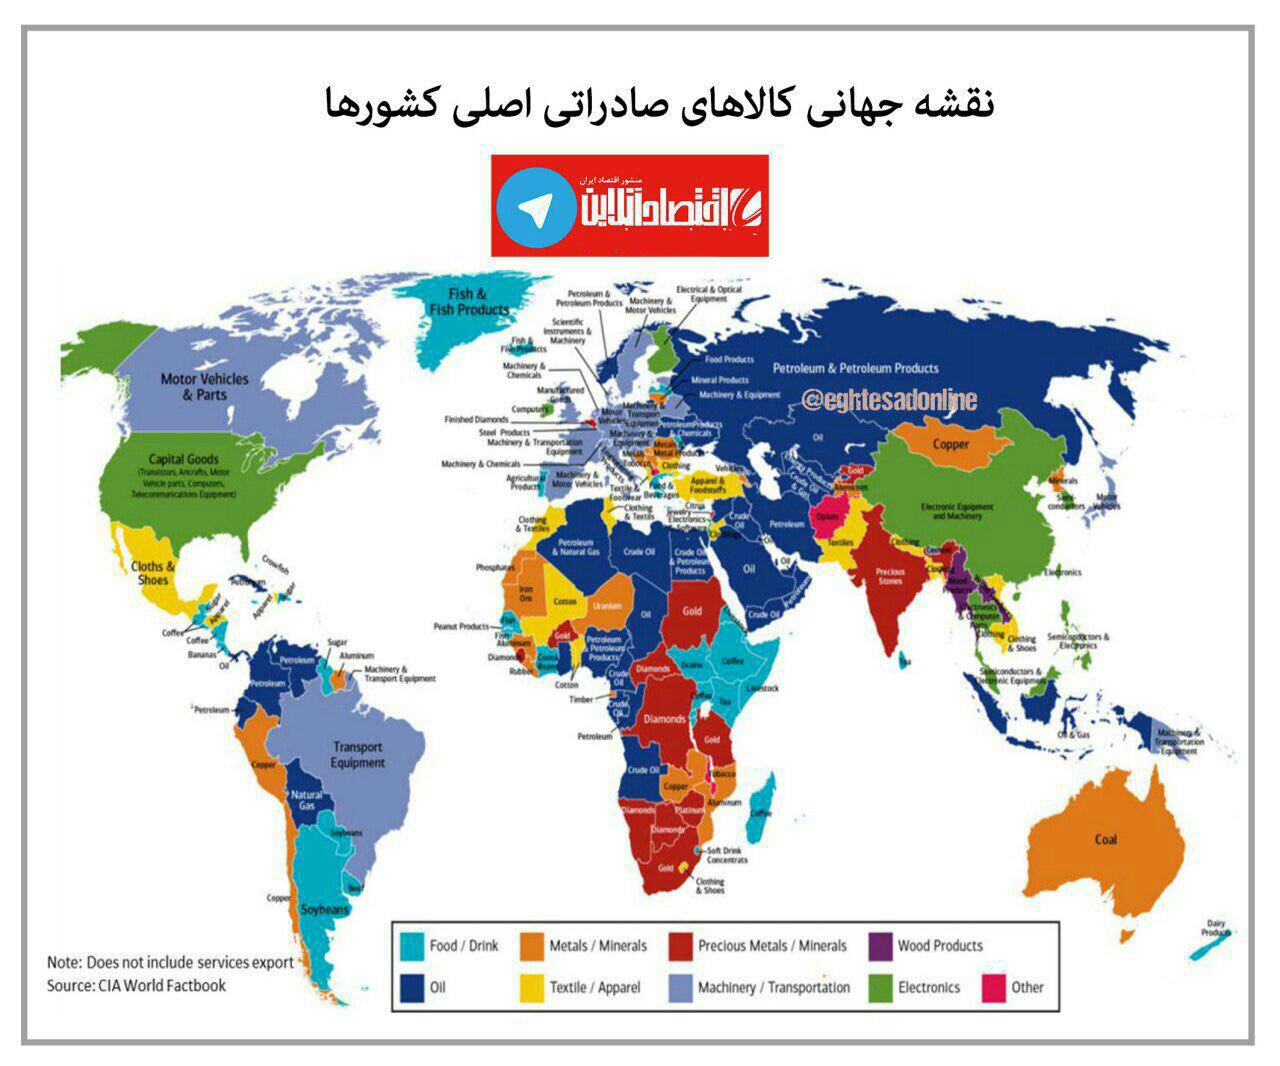 نقشه جهانی کالاهای اصلی صادراتی کشورها